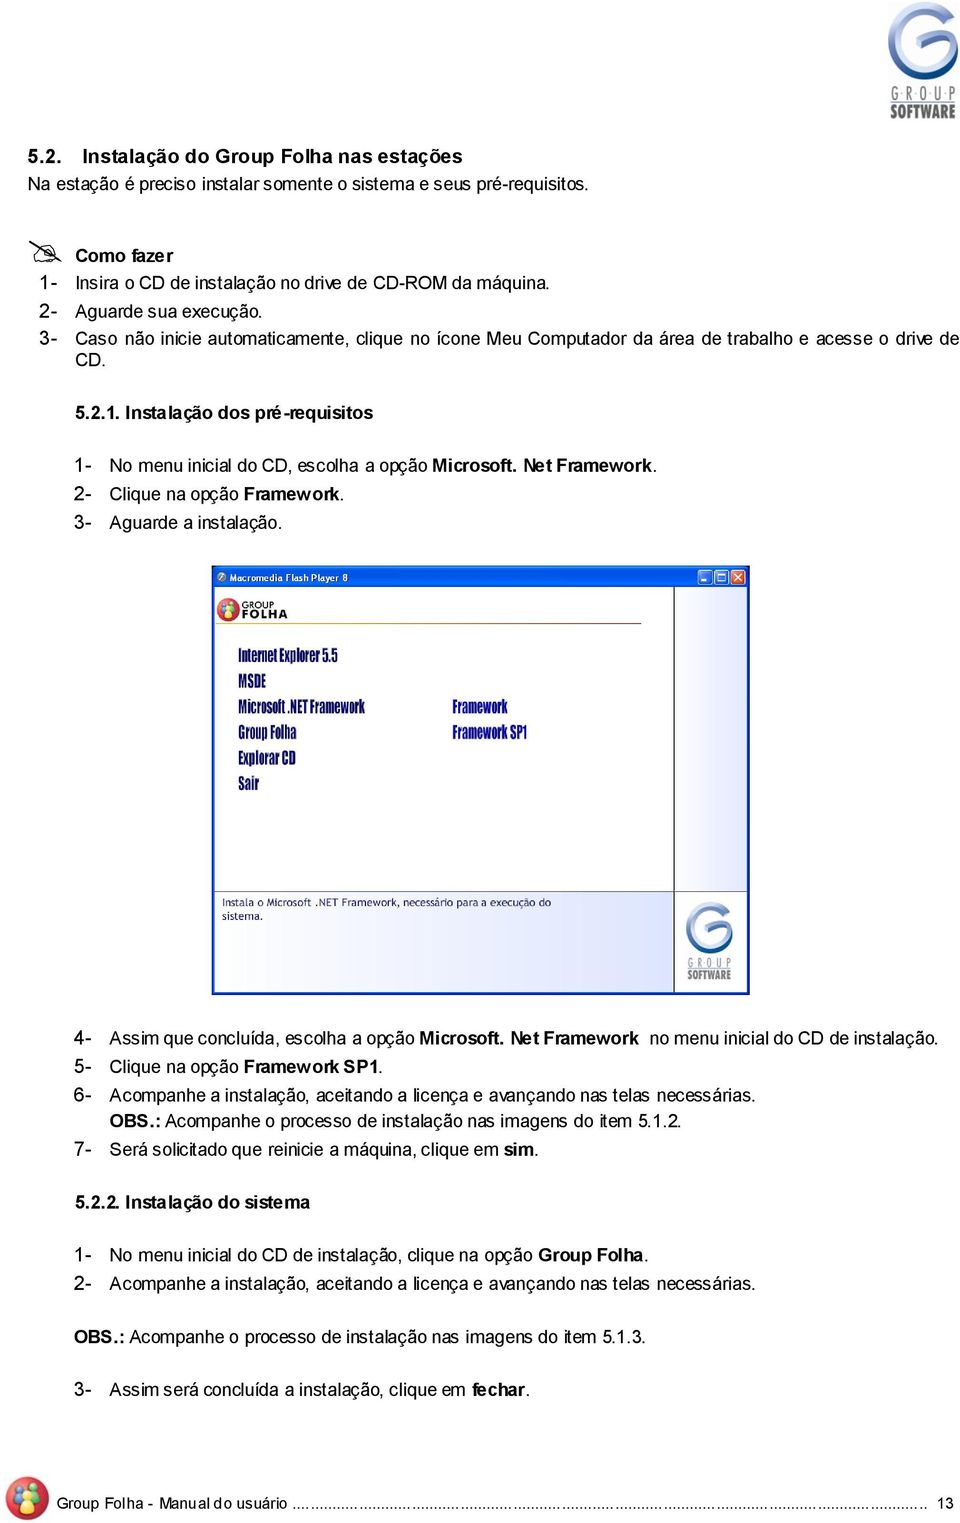 2- Clique na pçã Framewrk. 3- Aguarde a instalaçã. 4- Assim que cncluída, esclha a pçã Micrsft. Net Framewrk n menu inicial d CD de instalaçã. 5- Clique na pçã Framewrk SP1.